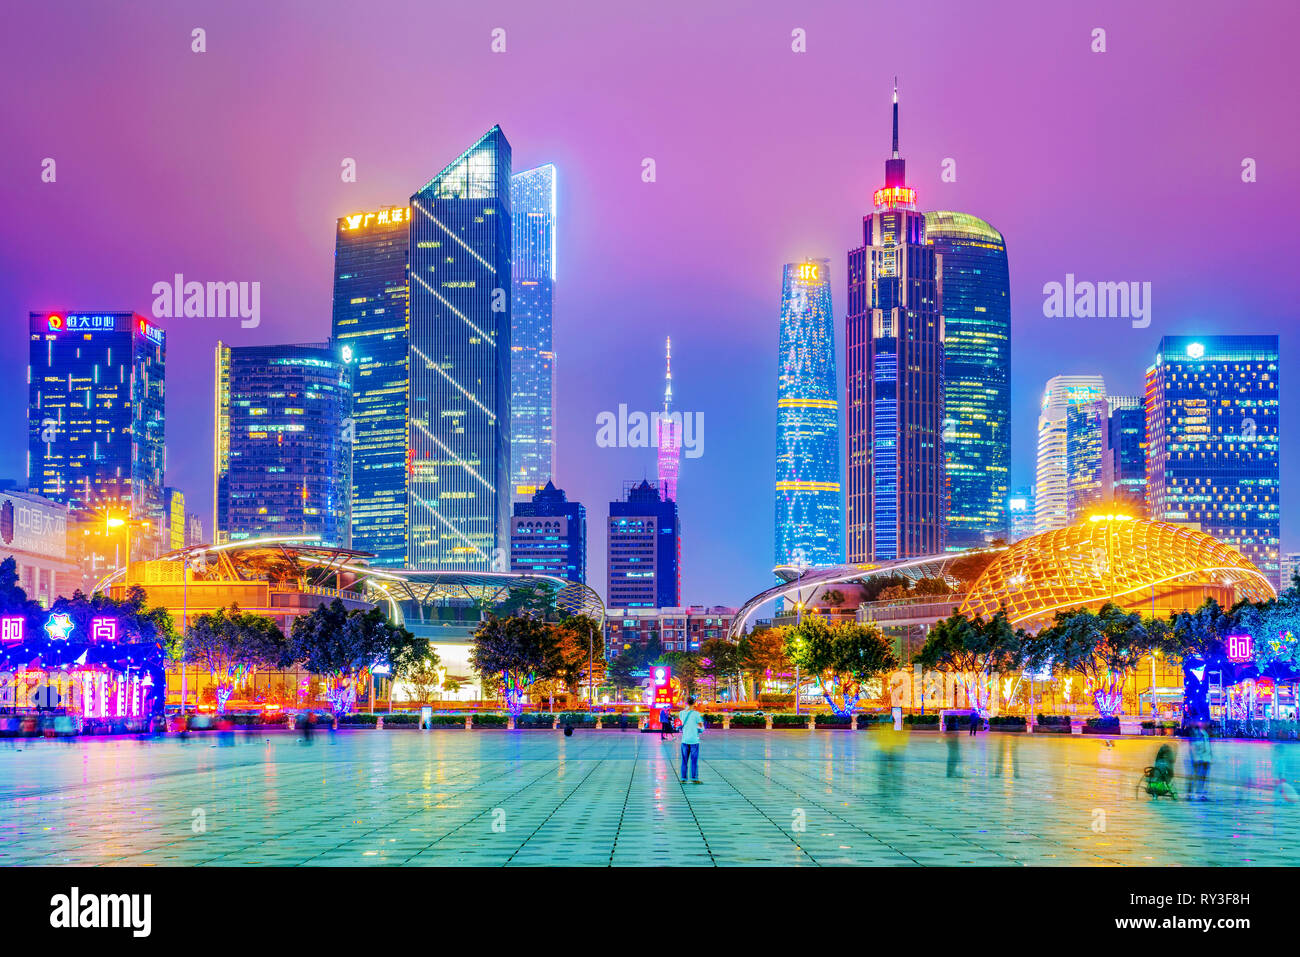 GUANGZHOU, Cina - 18 ottobre: questa è una vista serale della città di Guangzhou skyline di Zhujiang città nuovo quartiere finanziario del centro cittadino di area a ottobre Foto Stock